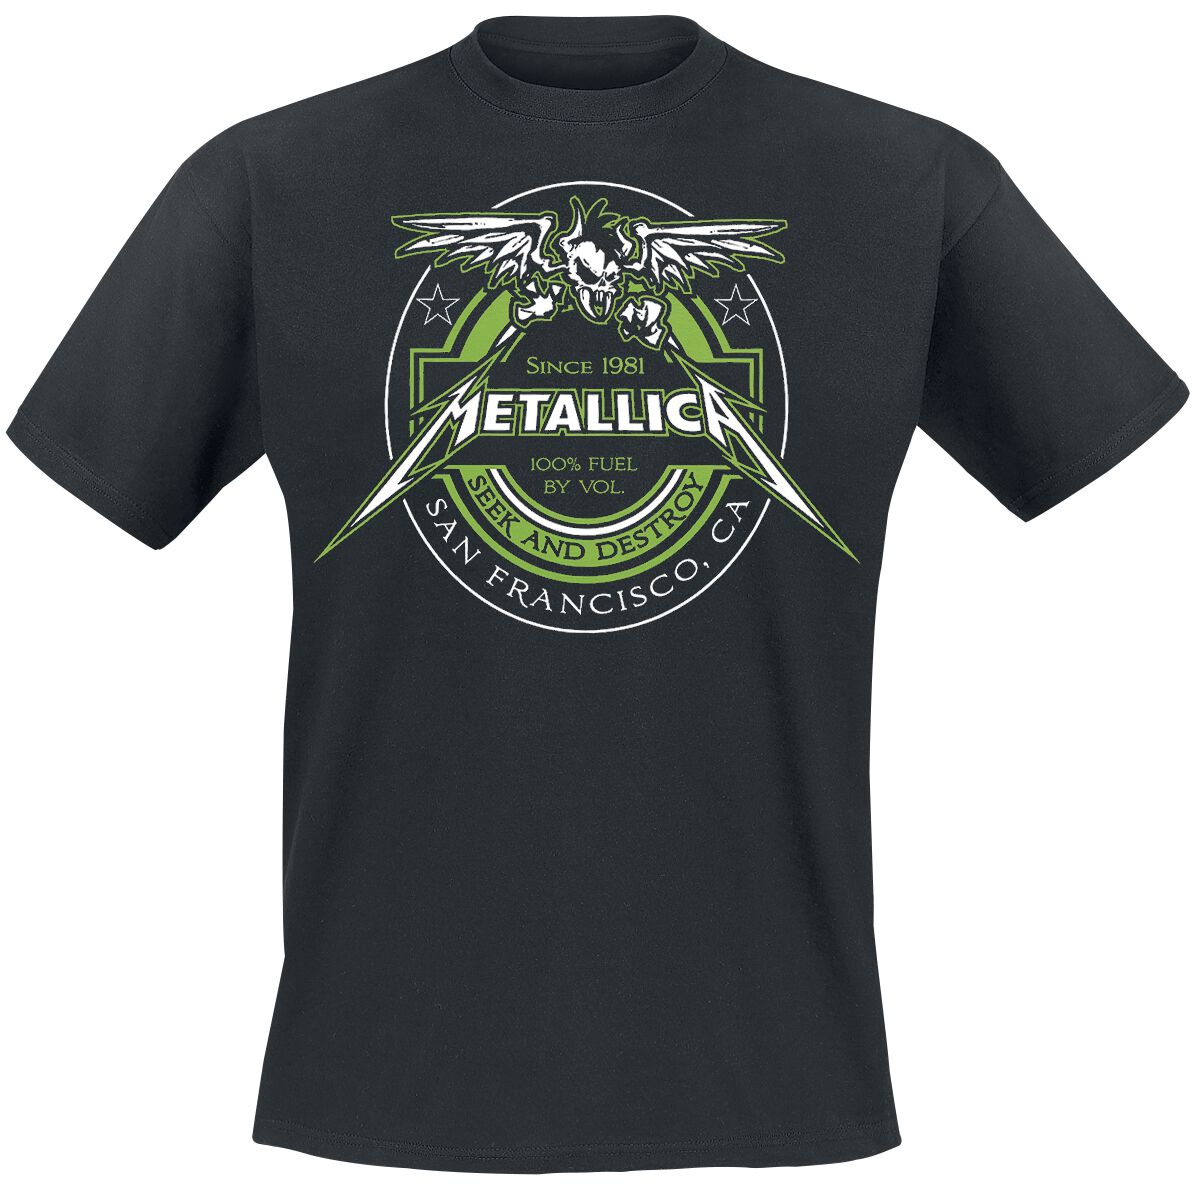 Metallica T-Shirt - 100% Fuel - Seek And Destroy - M bis 4XL - für Männer - Größe M - schwarz  - Lizenziertes Merchandise!